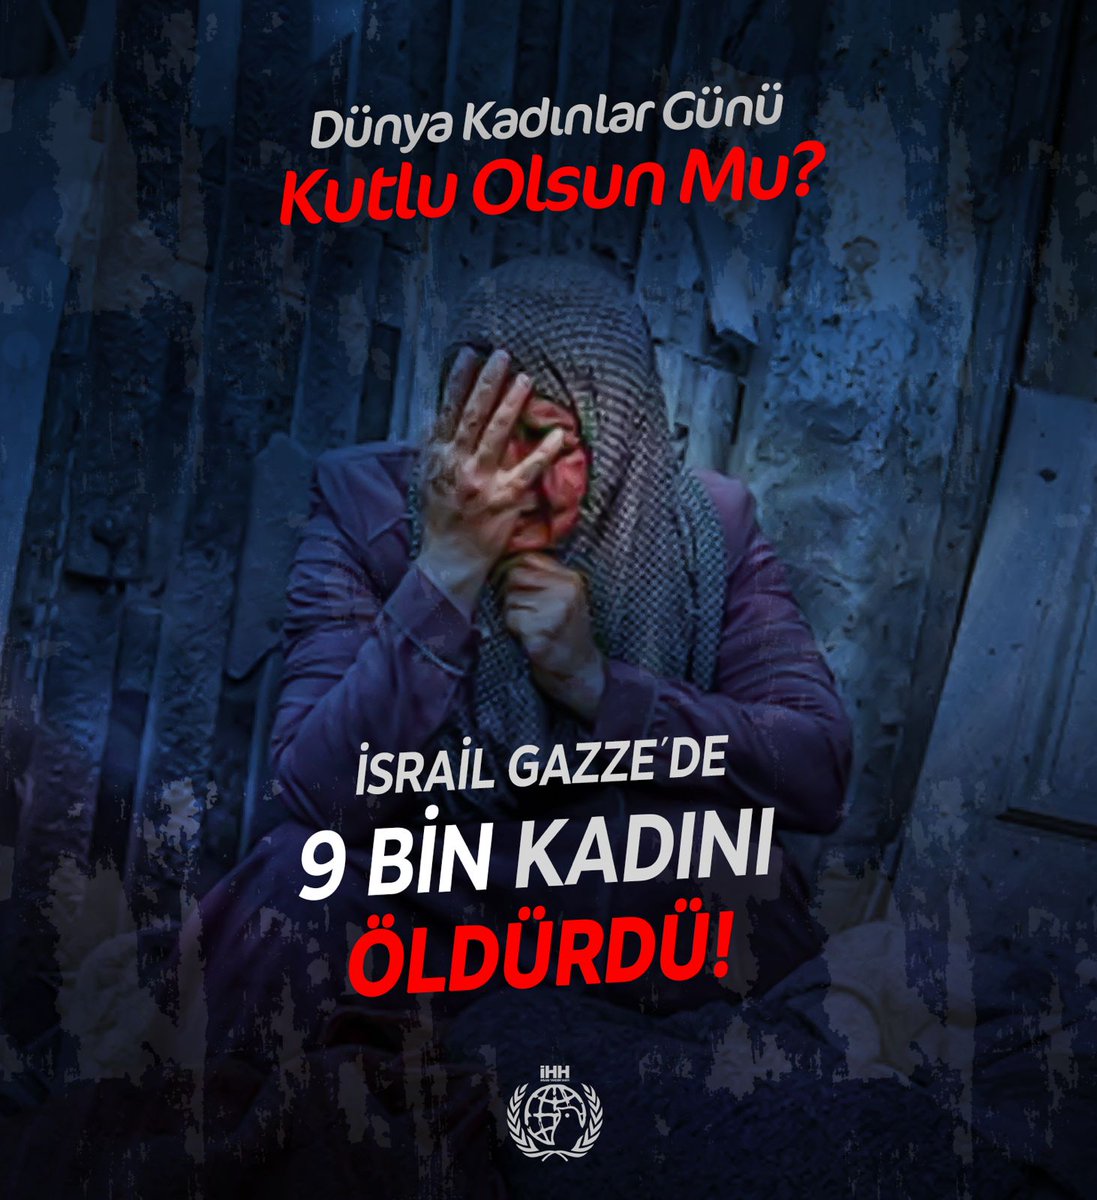 İşgalci İsrail, Gazze'de 9 BİN KADINI öldürdü! #8MartDünyaKadınlarGünü kutlu olsun mu?